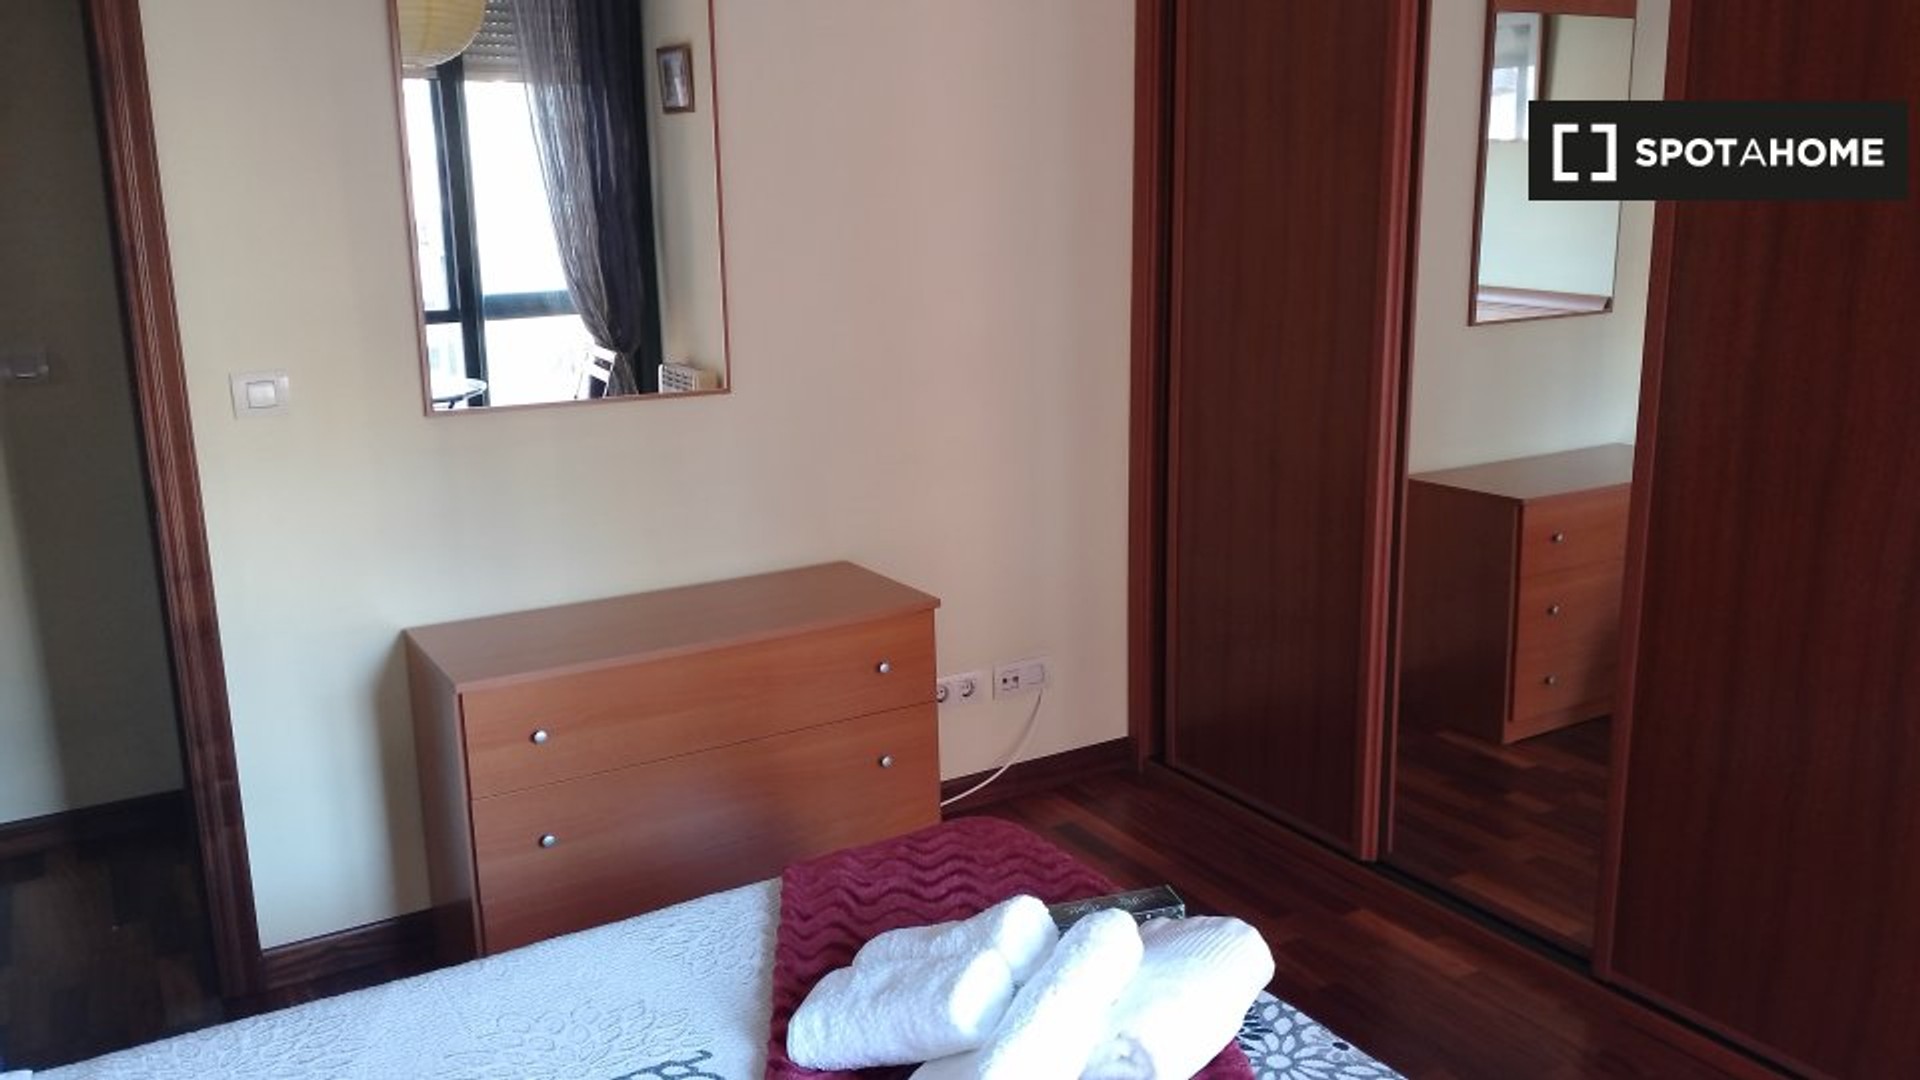 Alquiler de habitaciones por meses en Vigo